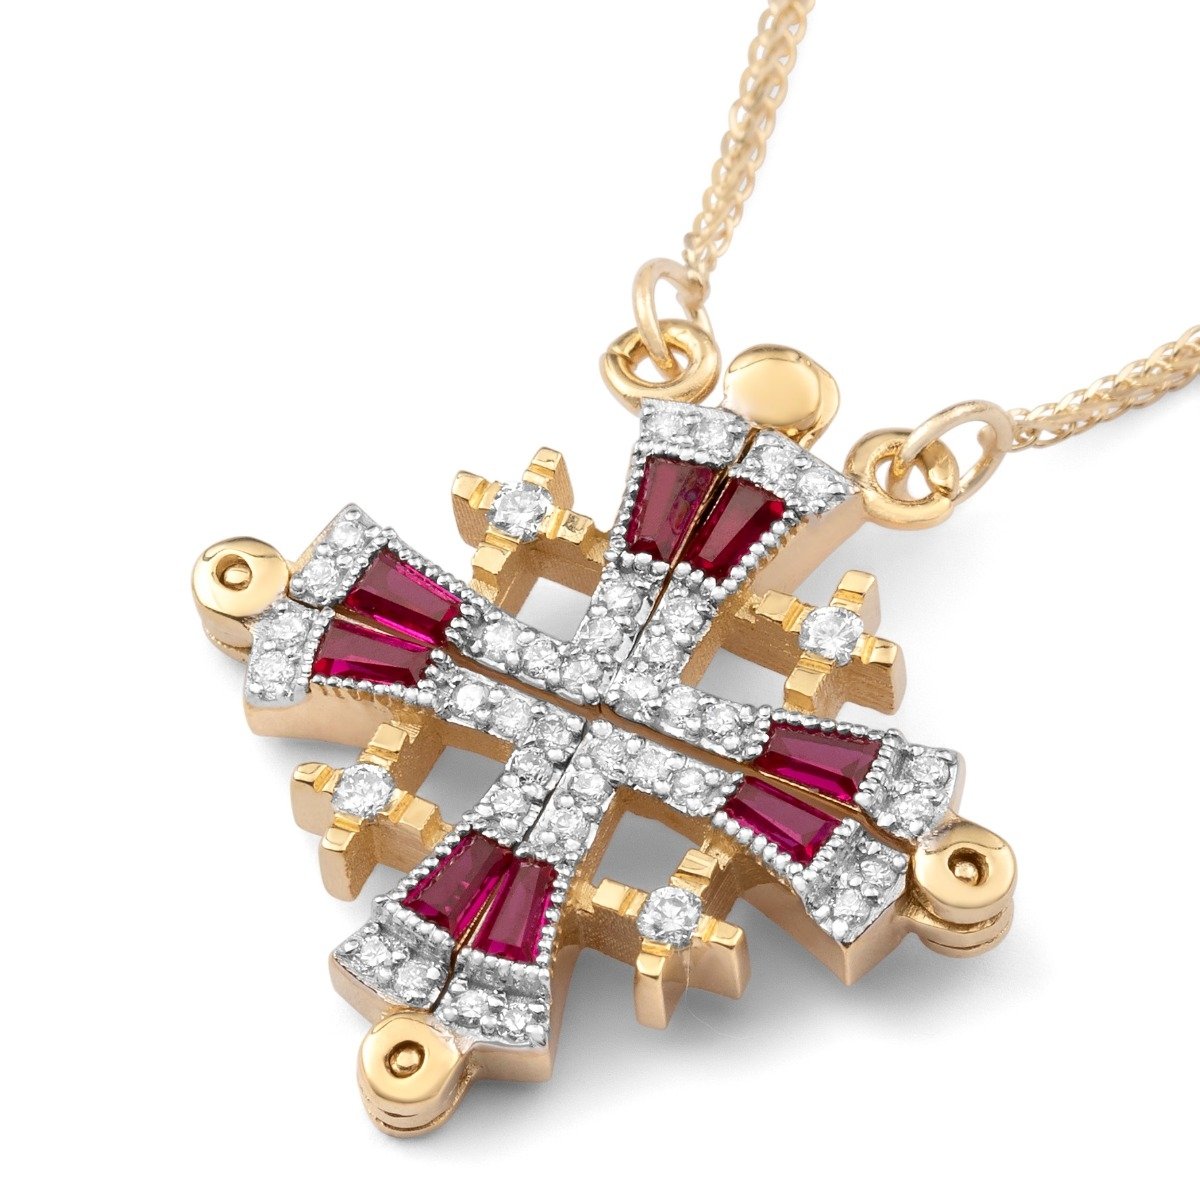 Anbinder Jewelry 14K Gold Jerusalem Cross Diamond Necklace with Ruby Stones - 1